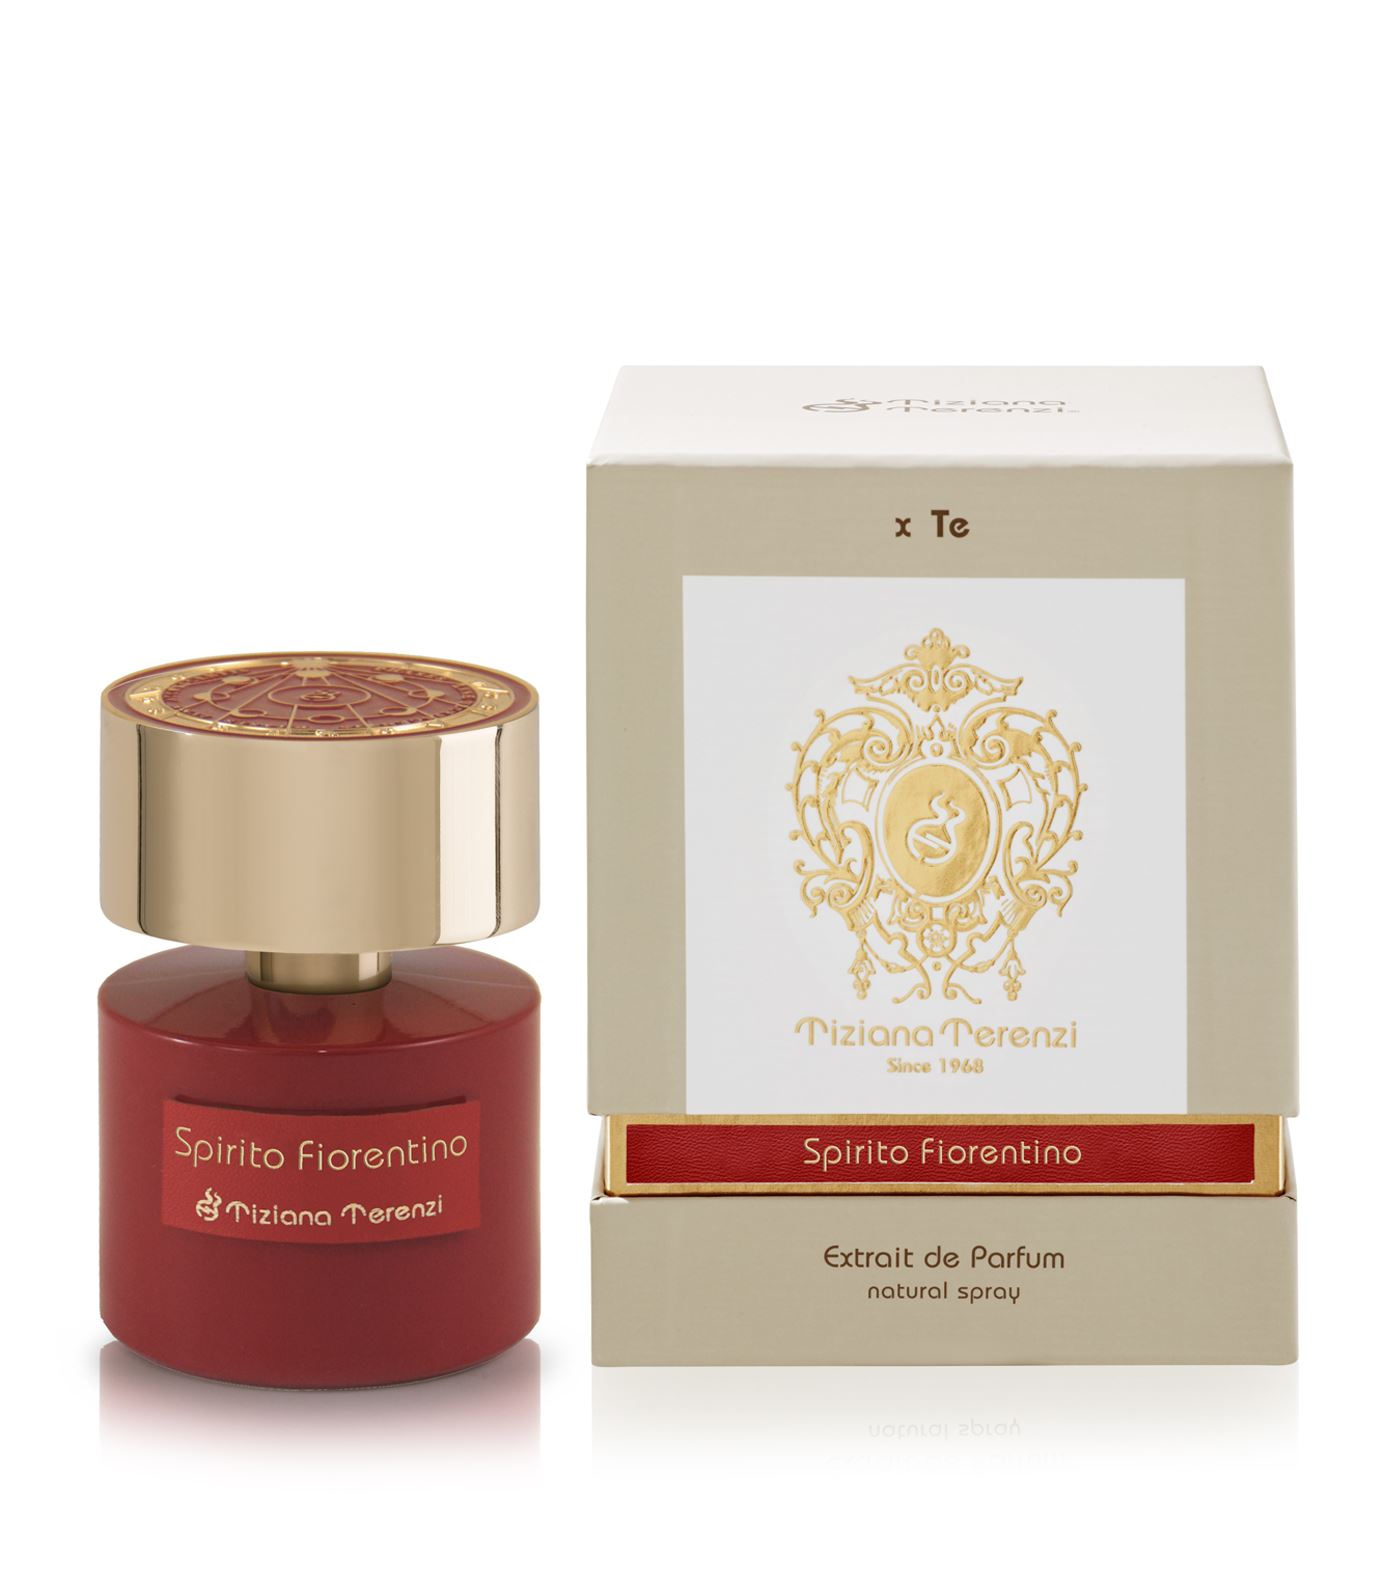 Tiziana Terenzi Spirito Fiorentino 10 ml NIŠINIAI kvepalų mėginukas (atomaizeris) Unisex Parfum